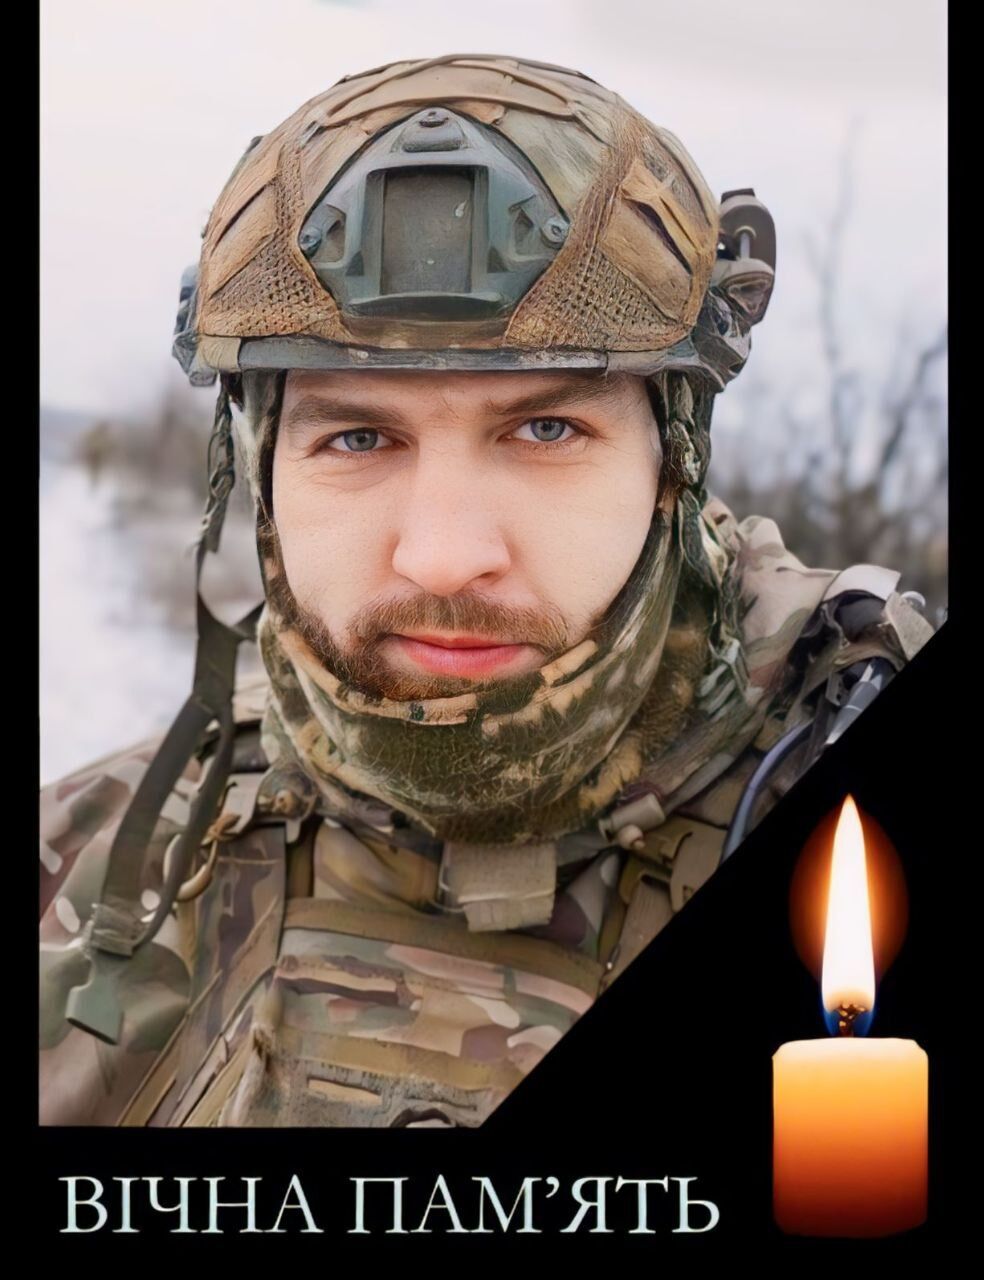 "Був відважним воїном, готовим прийти на допомогу": у боях за Україну загинув захисник із Хмельниччини. Фото 